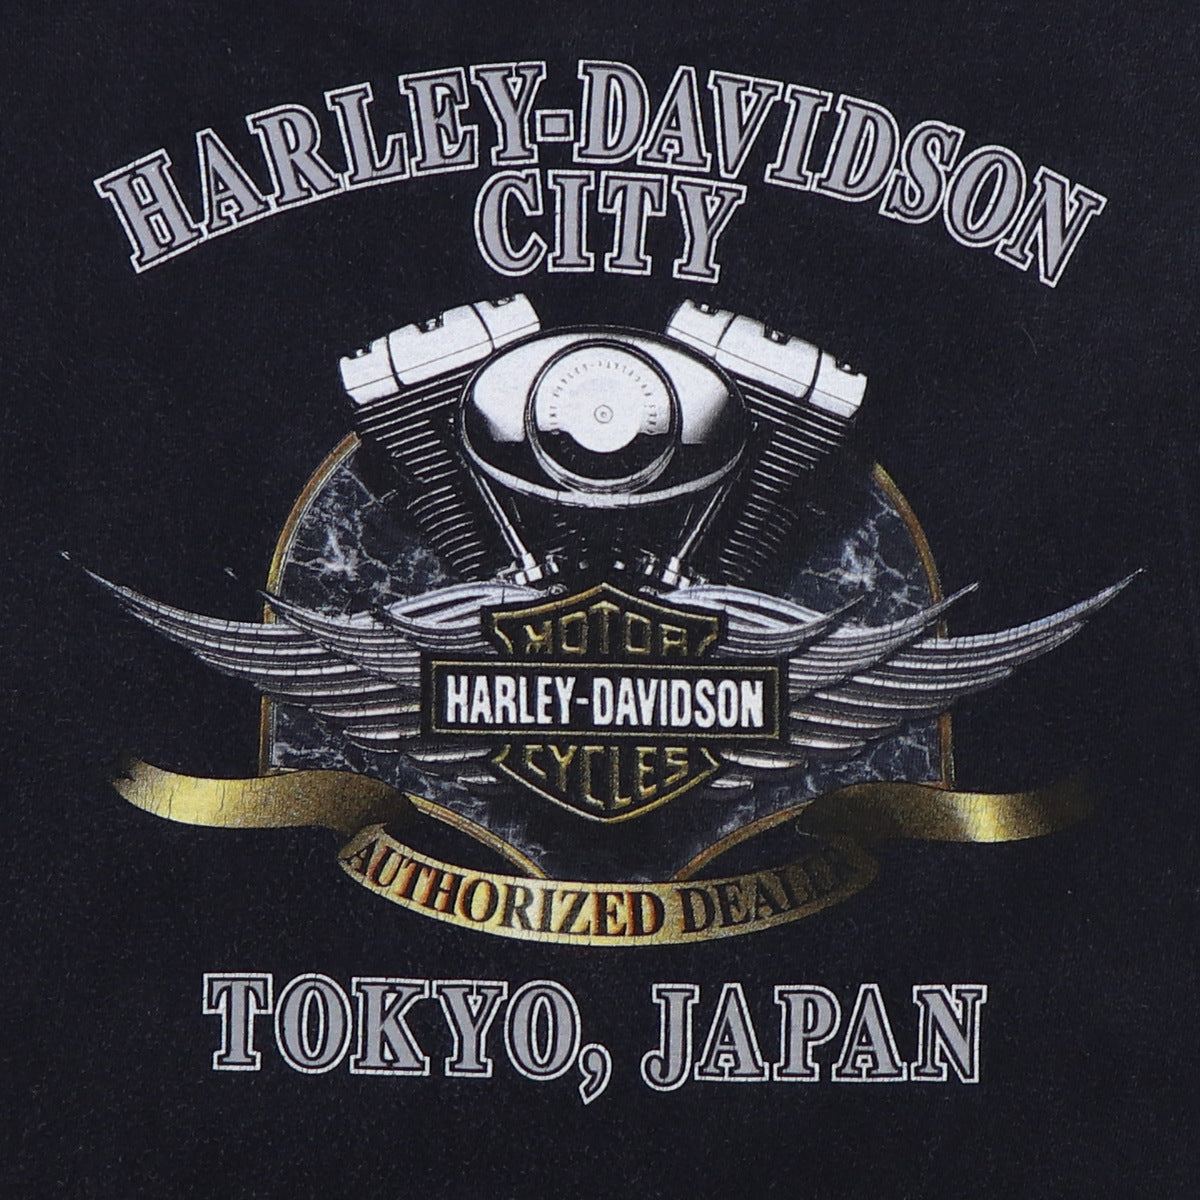 2001 Harley Davidson Motorcycles Wild & Free Shirt